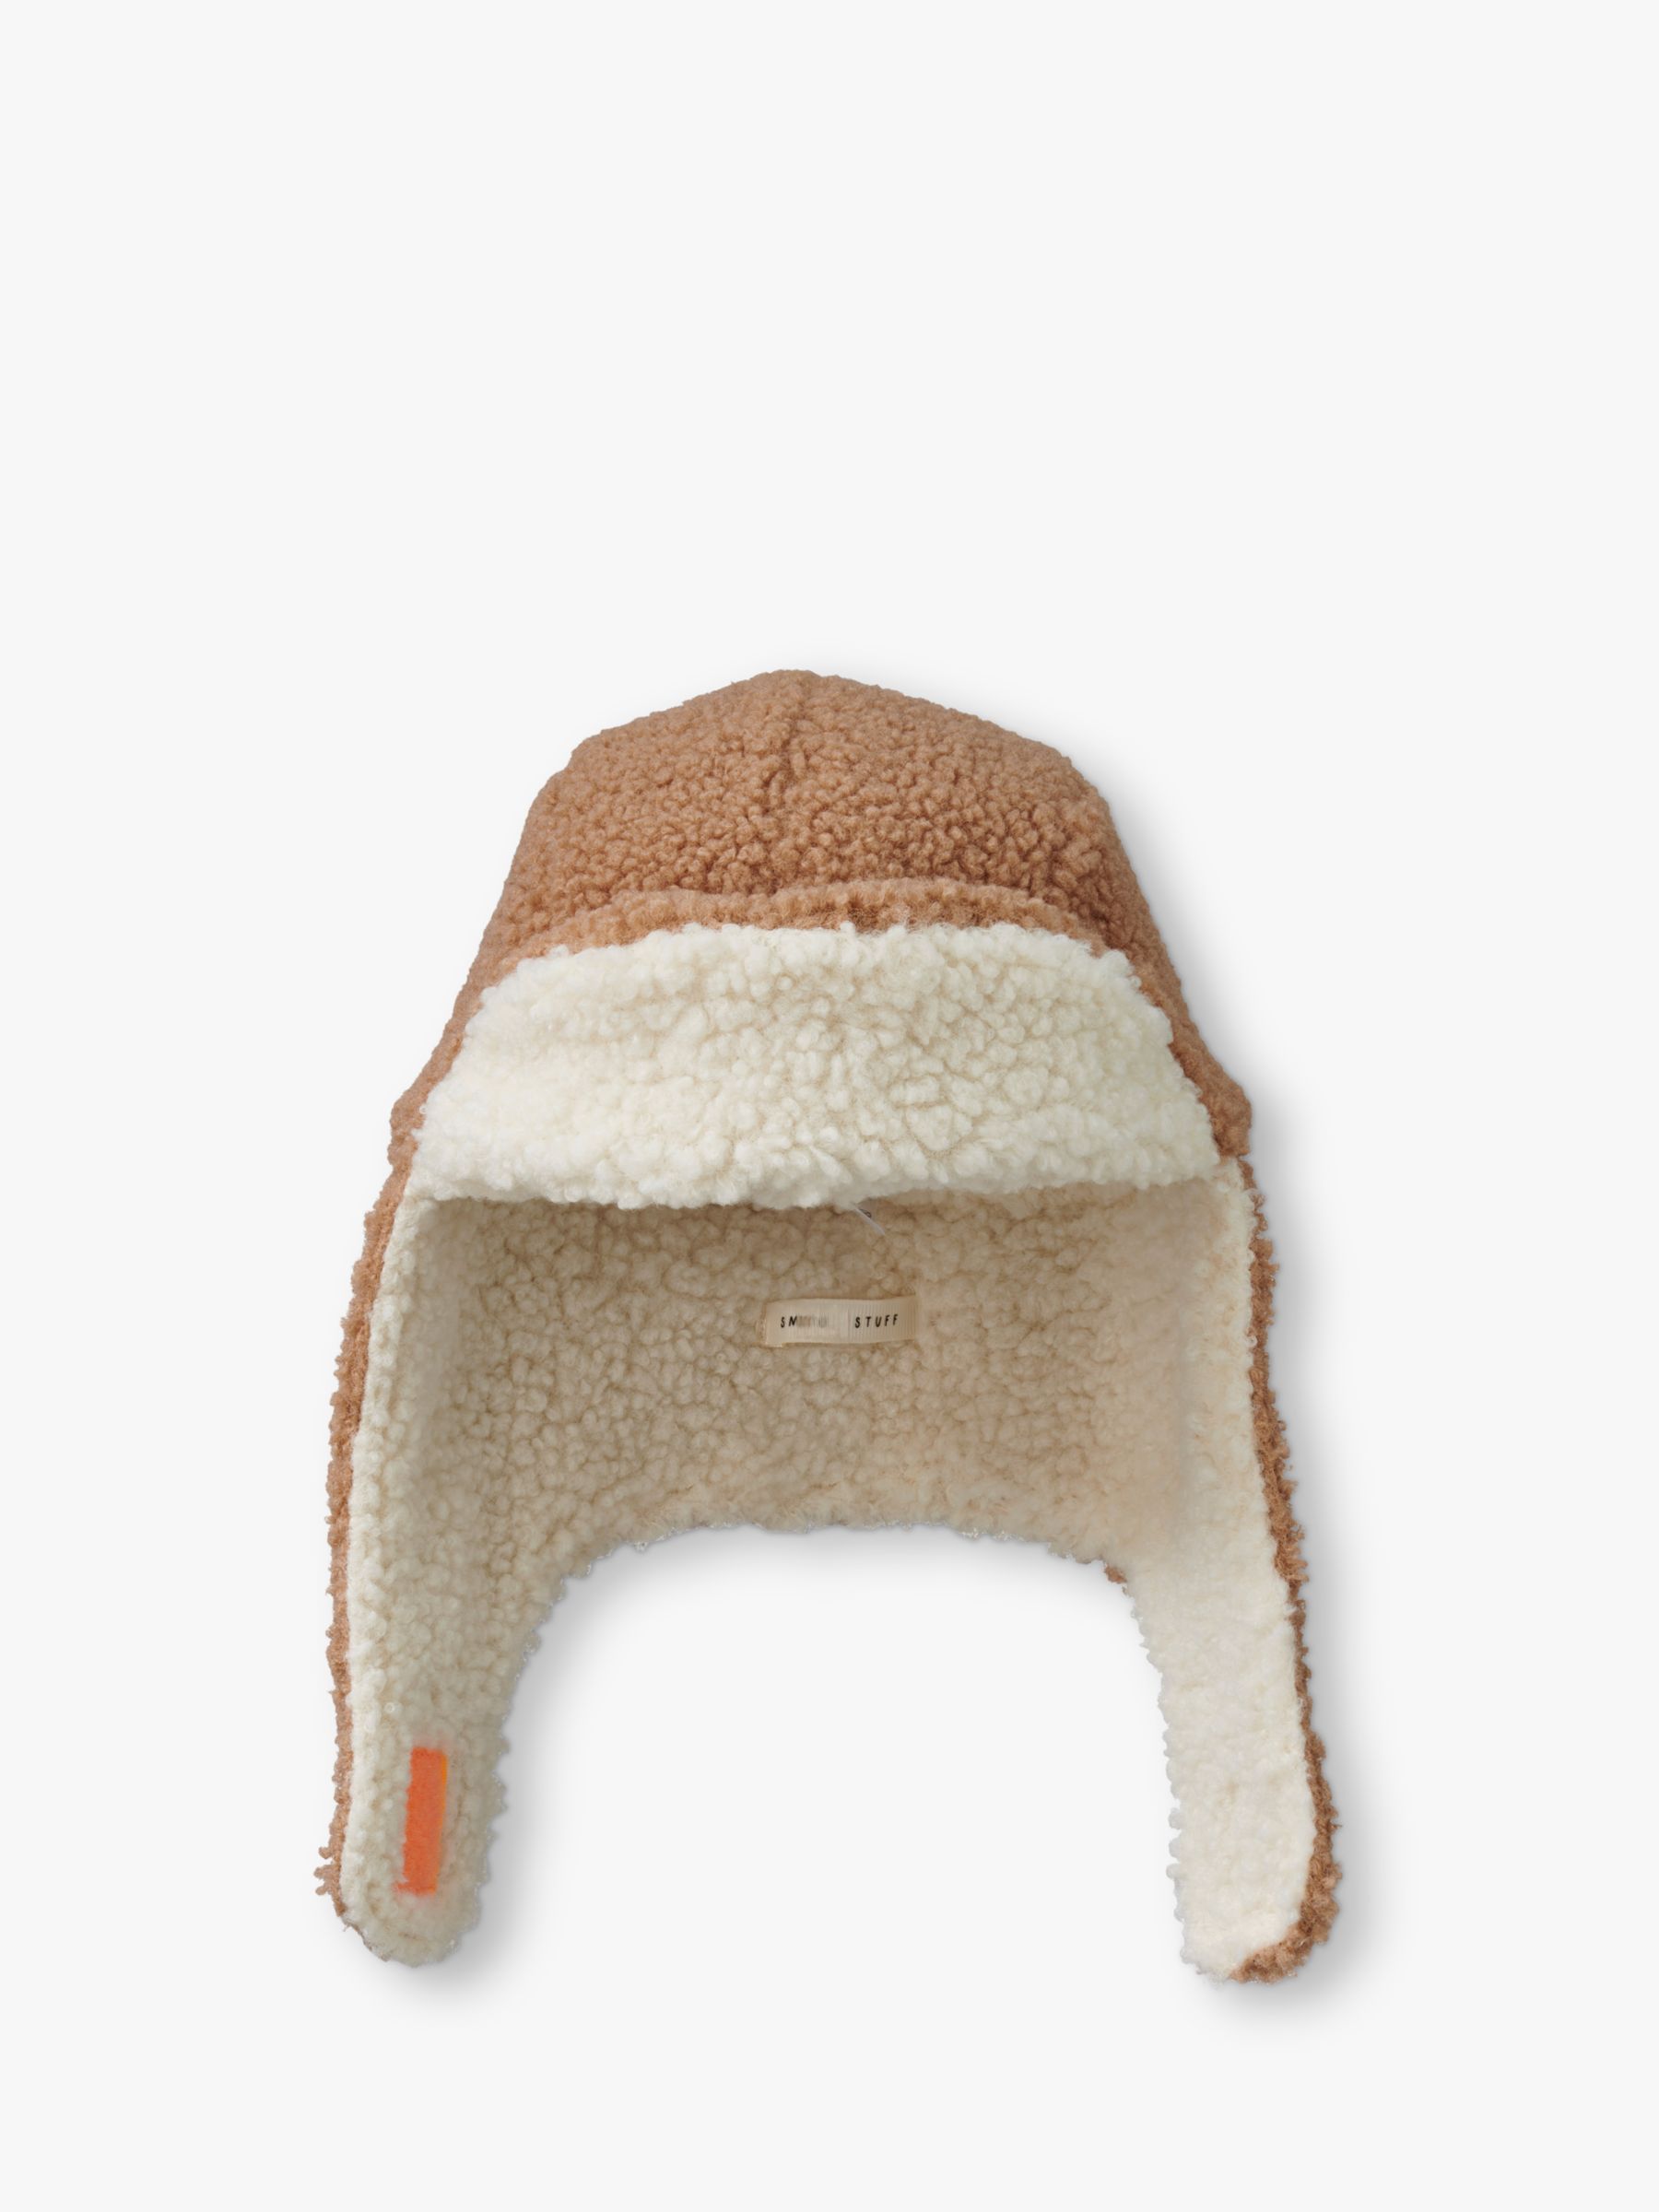 Buy Small Stuff Kids' Borg Deerstalker Hat, Natural/Beige Online at johnlewis.com